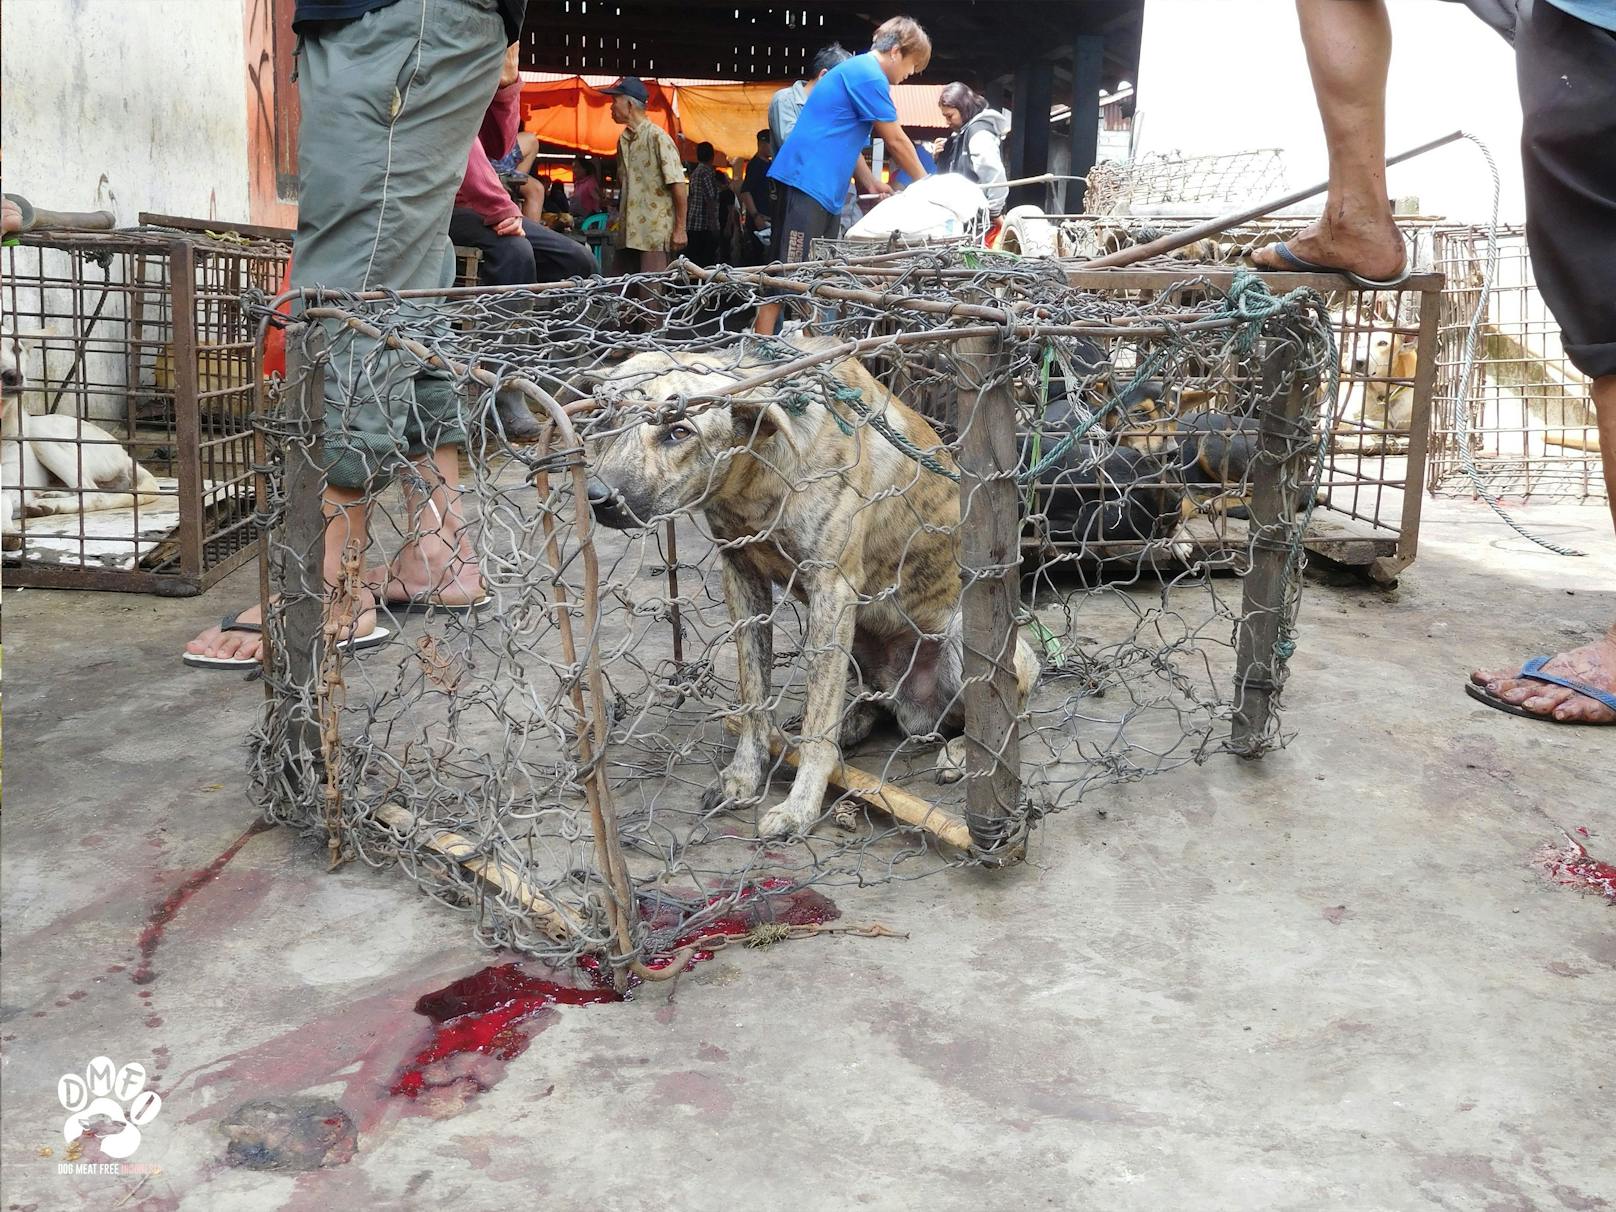 In einem historischen Abkommen hat das Volkskomitee der Touristen-Stadt Hoi An (Vietnam) in Zusammenarbeit mit der Tierschutzorganisation mit Sitz in Wien eine Absichtserklärung unterzeichnet, um den Handel von Hunde- und Katzenfleisch in der Stadt zu verbieten.